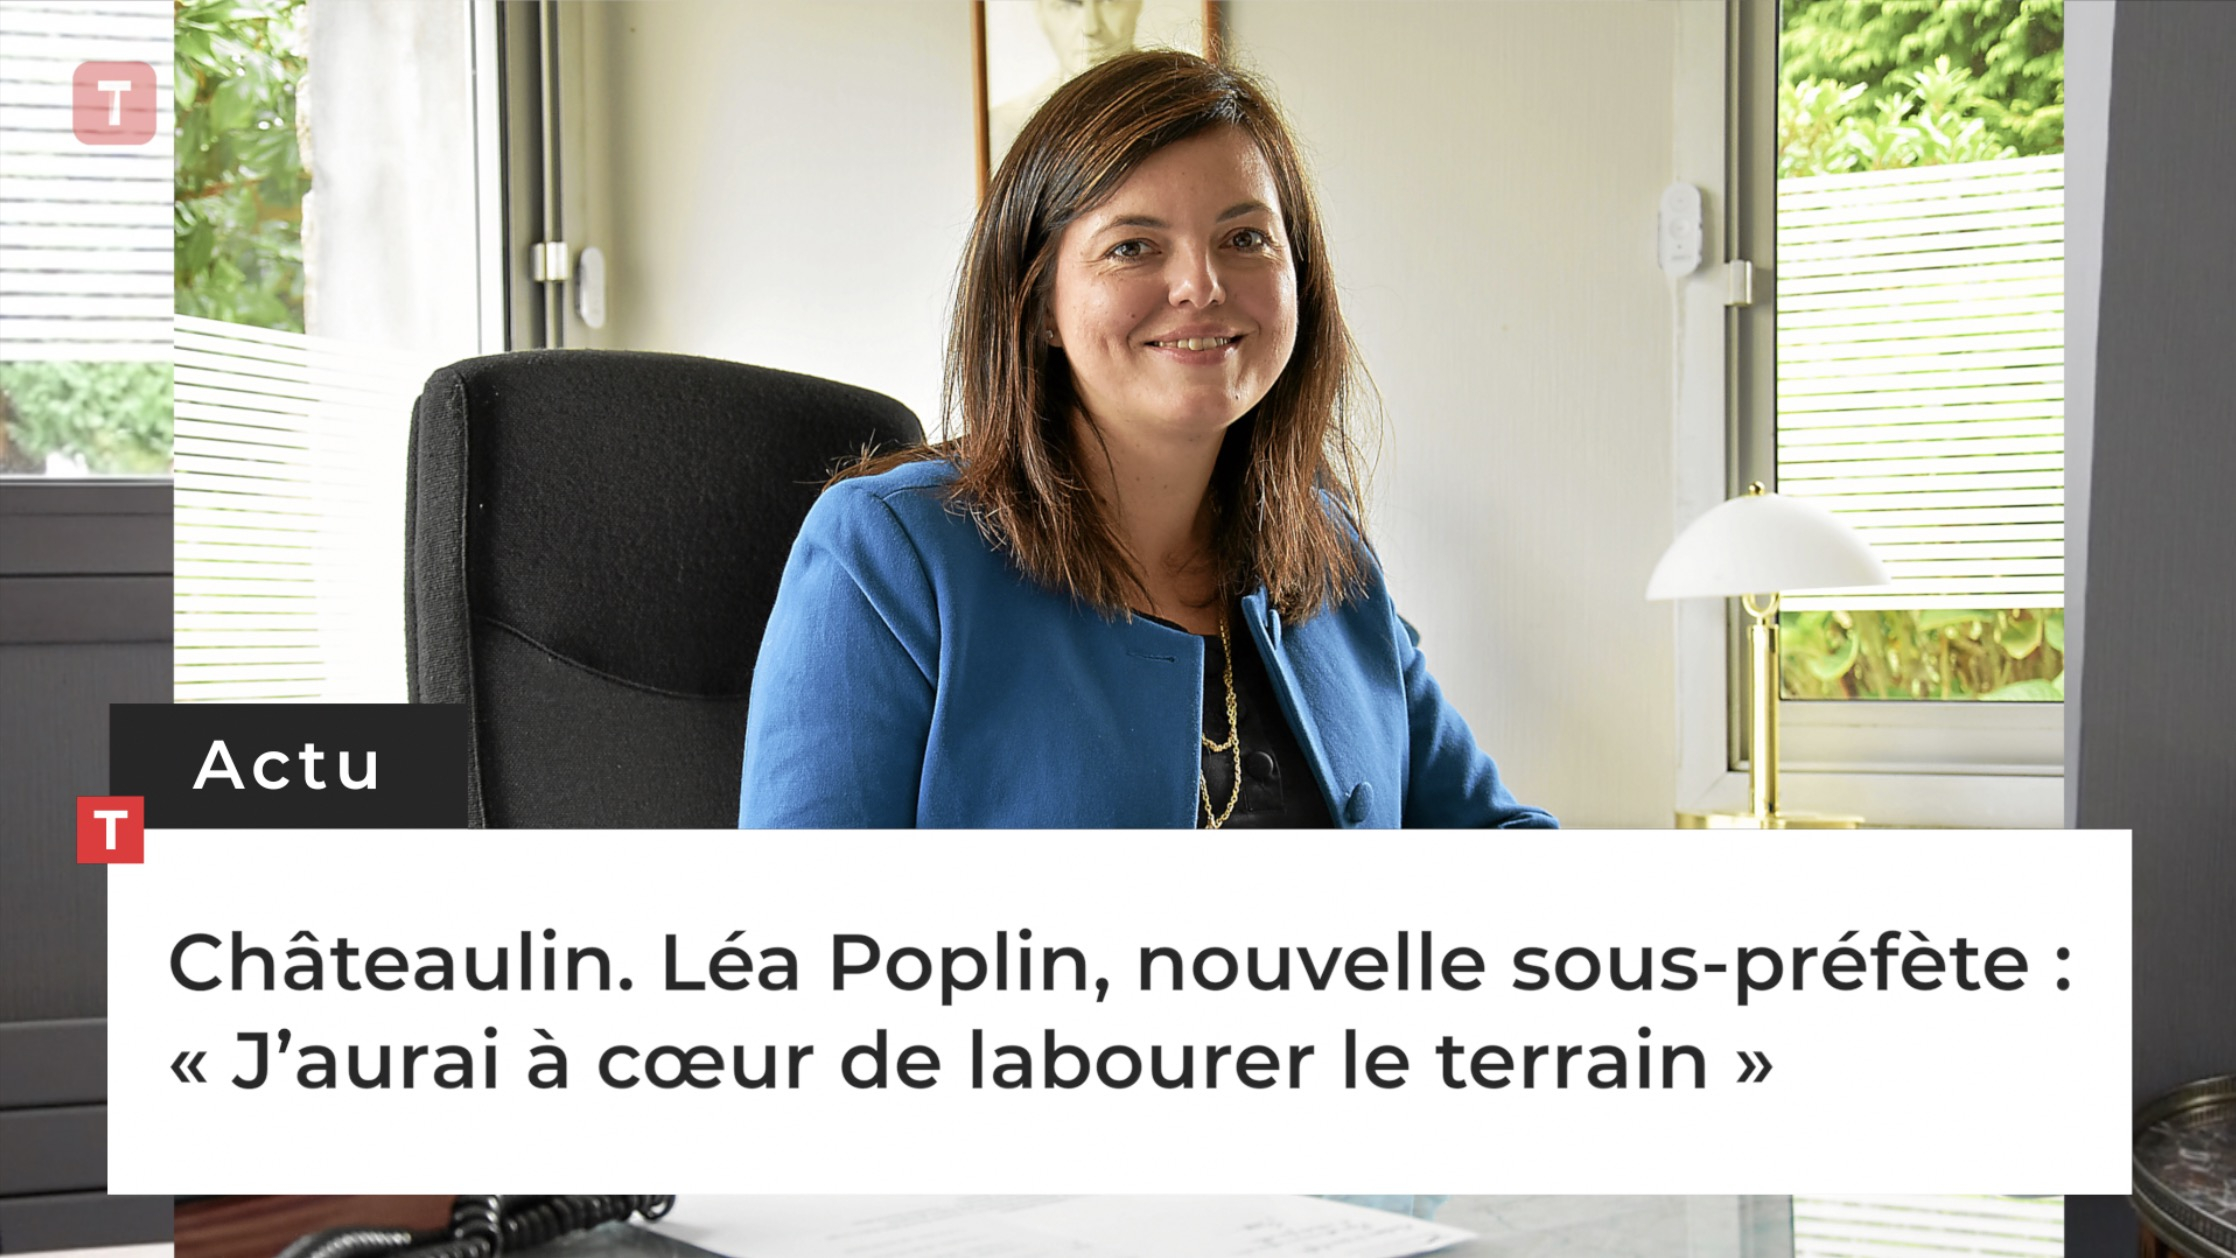 Châteaulin. Léa Poplin, nouvelle sous-préfète : « J’aurai à cœur de labourer le terrain » (Le Télégramme)